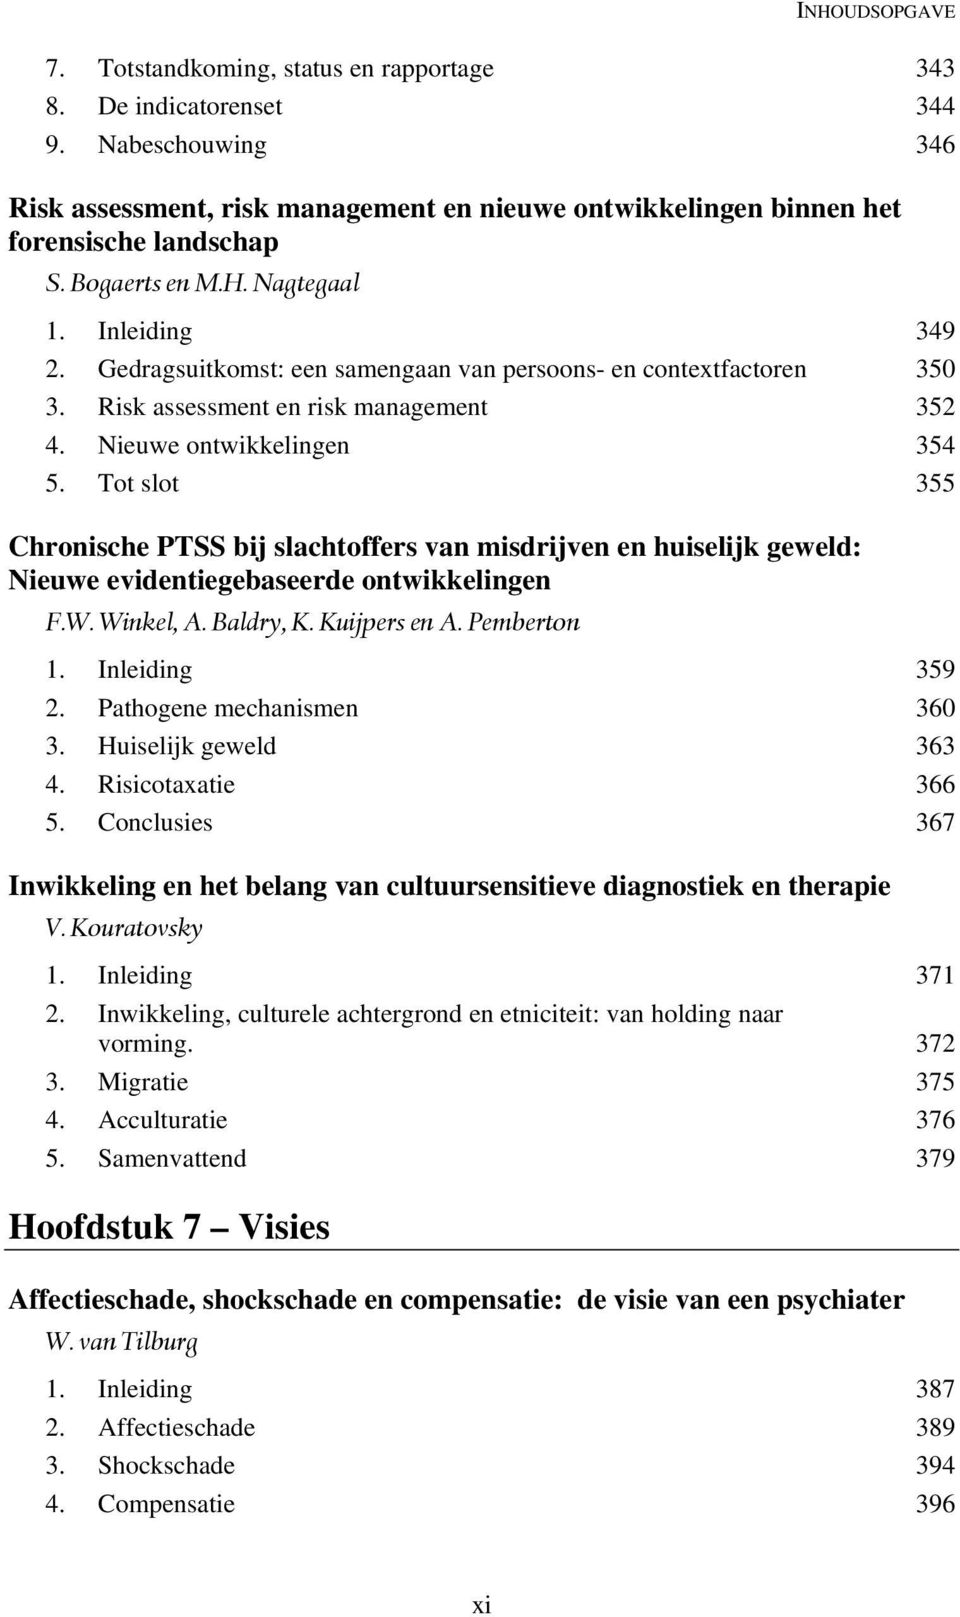 Tot slot 355 Chronische PTSS bij slachtoffers van misdrijven en huiselijk geweld: Nieuwe evidentiegebaseerde ontwikkelingen F.W. Winkel, A. Baldry, K. Kuijpers en A. Pemberton 1. Inleiding 359 2.